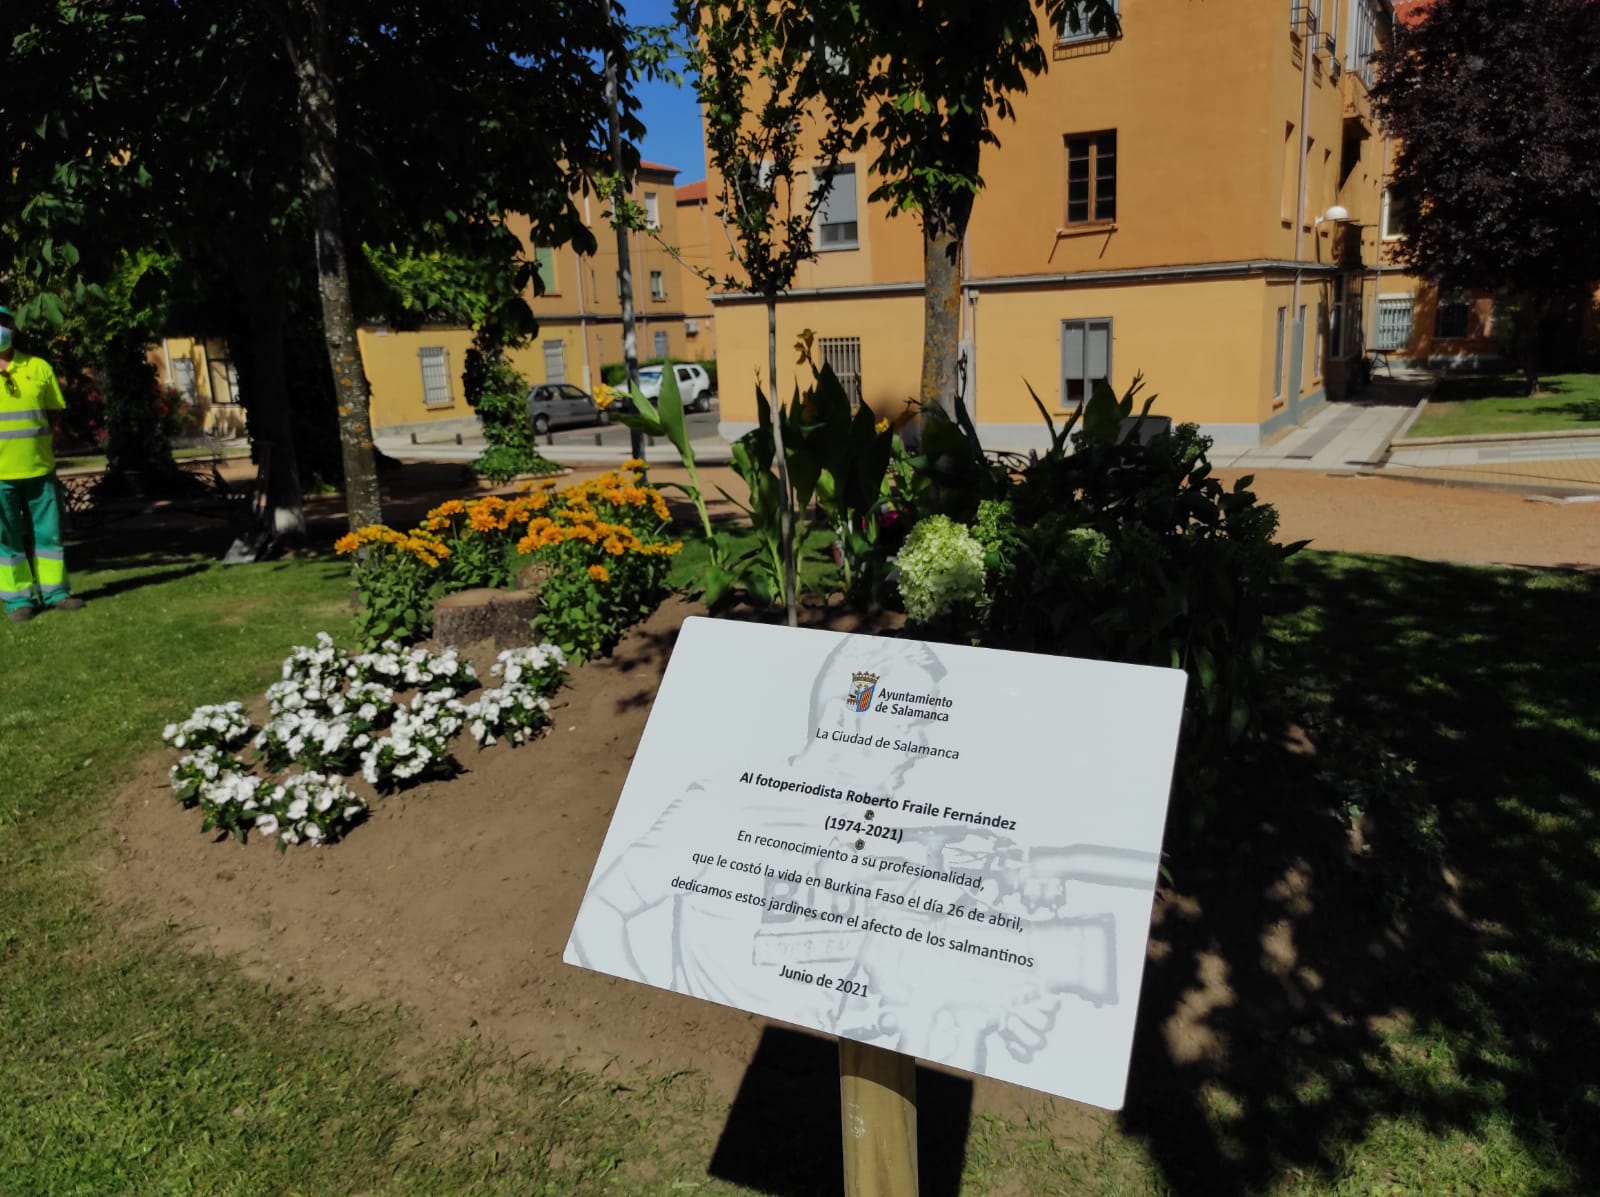 Acto de inauguración de un jardín en Salamanca en honor a Roberto Fraile (2)